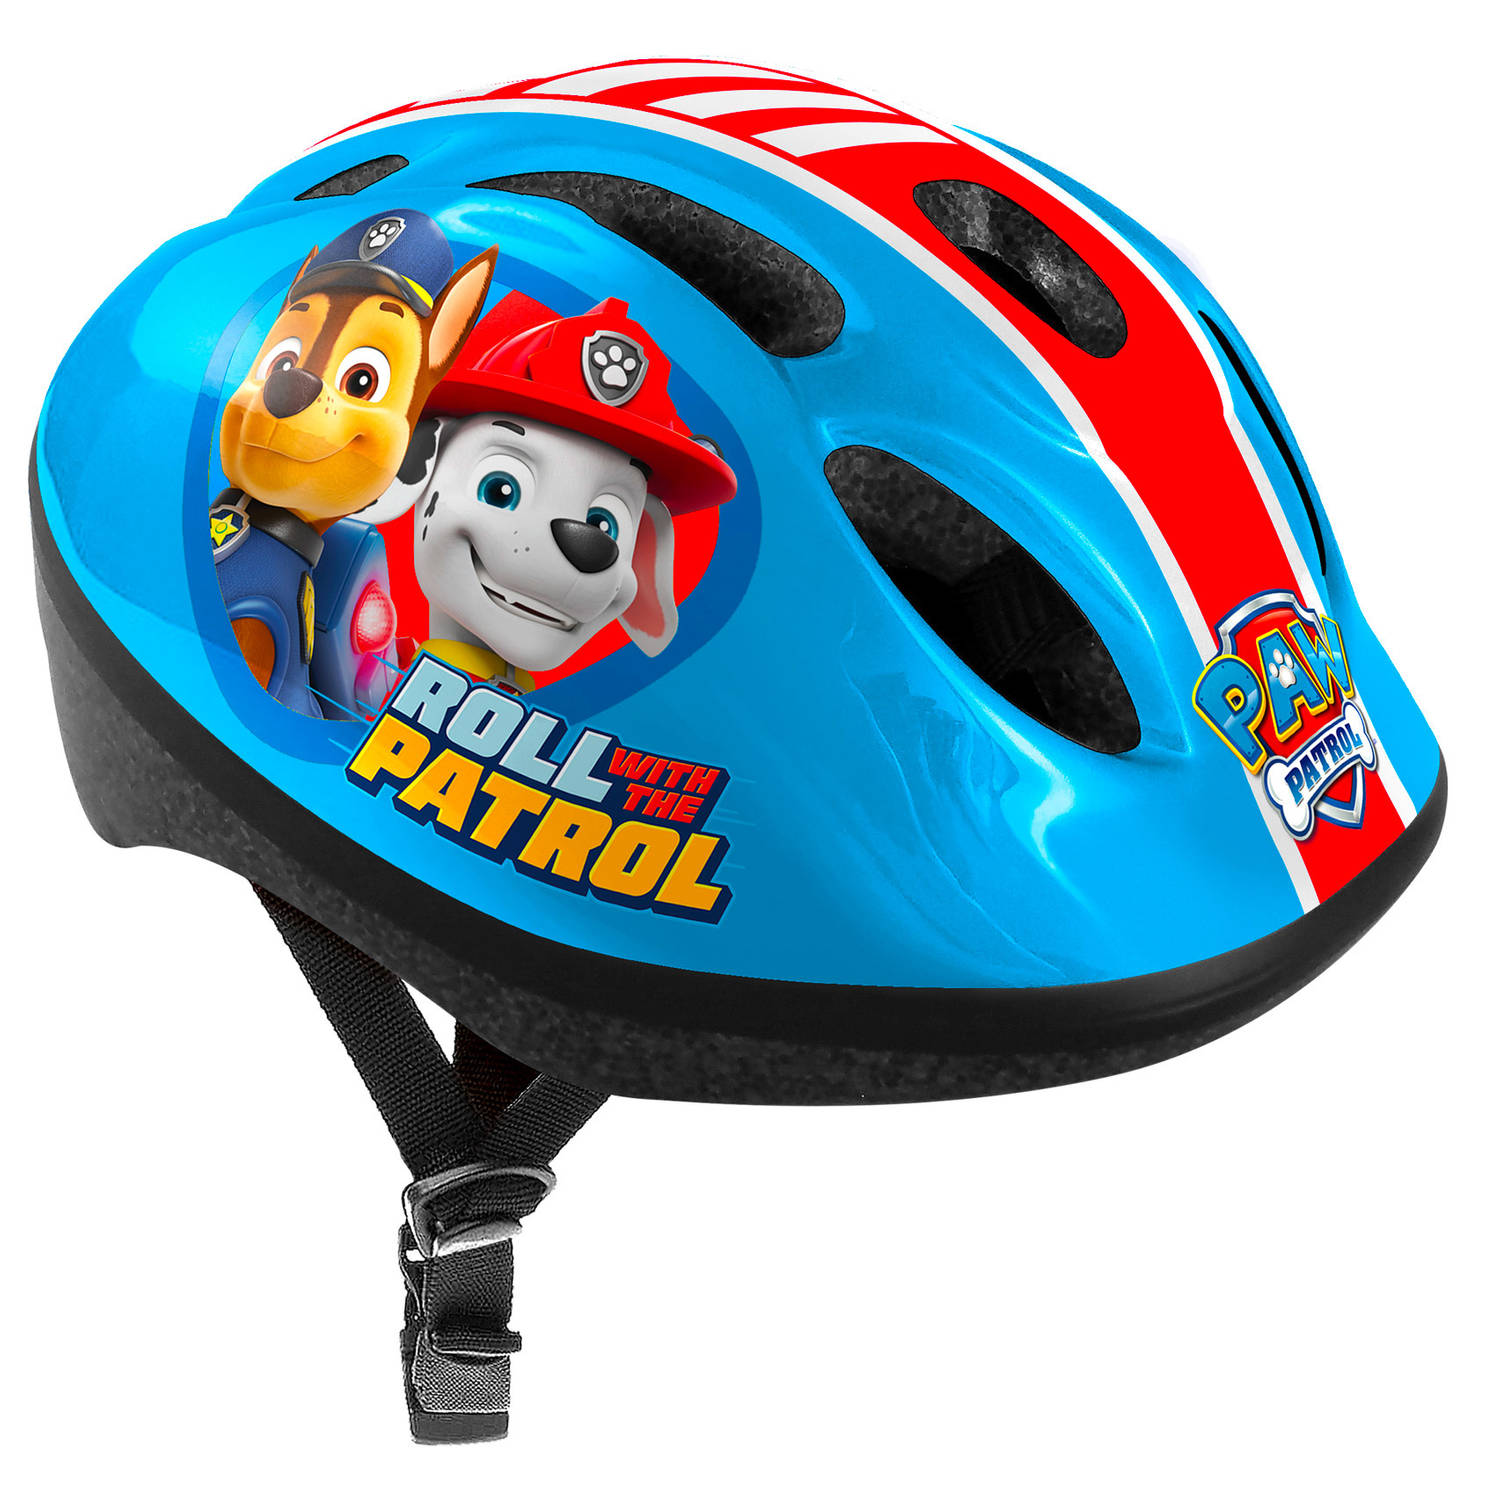 Nickelodeon Paw Patrol fietshelm verstelbaar 50-56 cm blauw-rood